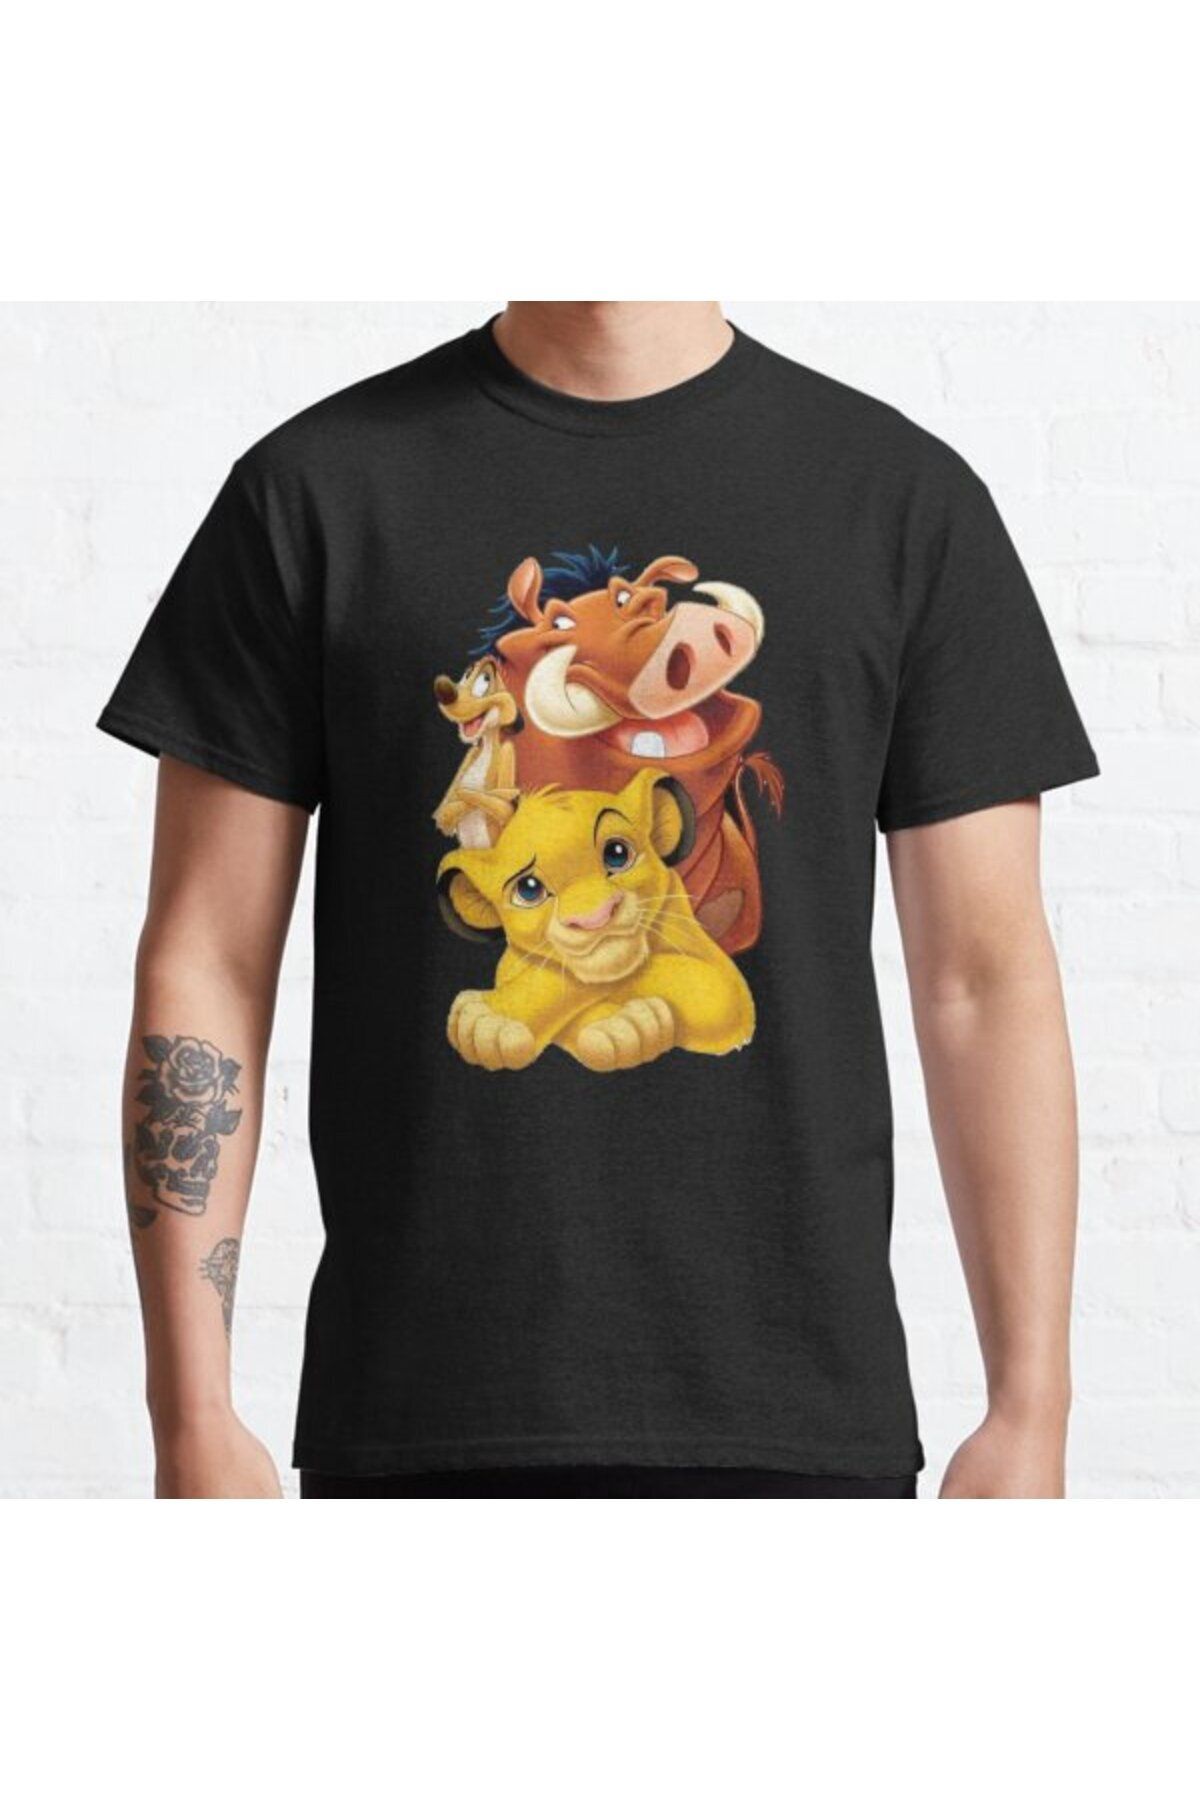 ZOKAWEAR Bol Kalıp Lion King Simba Timon And Pumbaa Tasarım Baskılı T-shirt